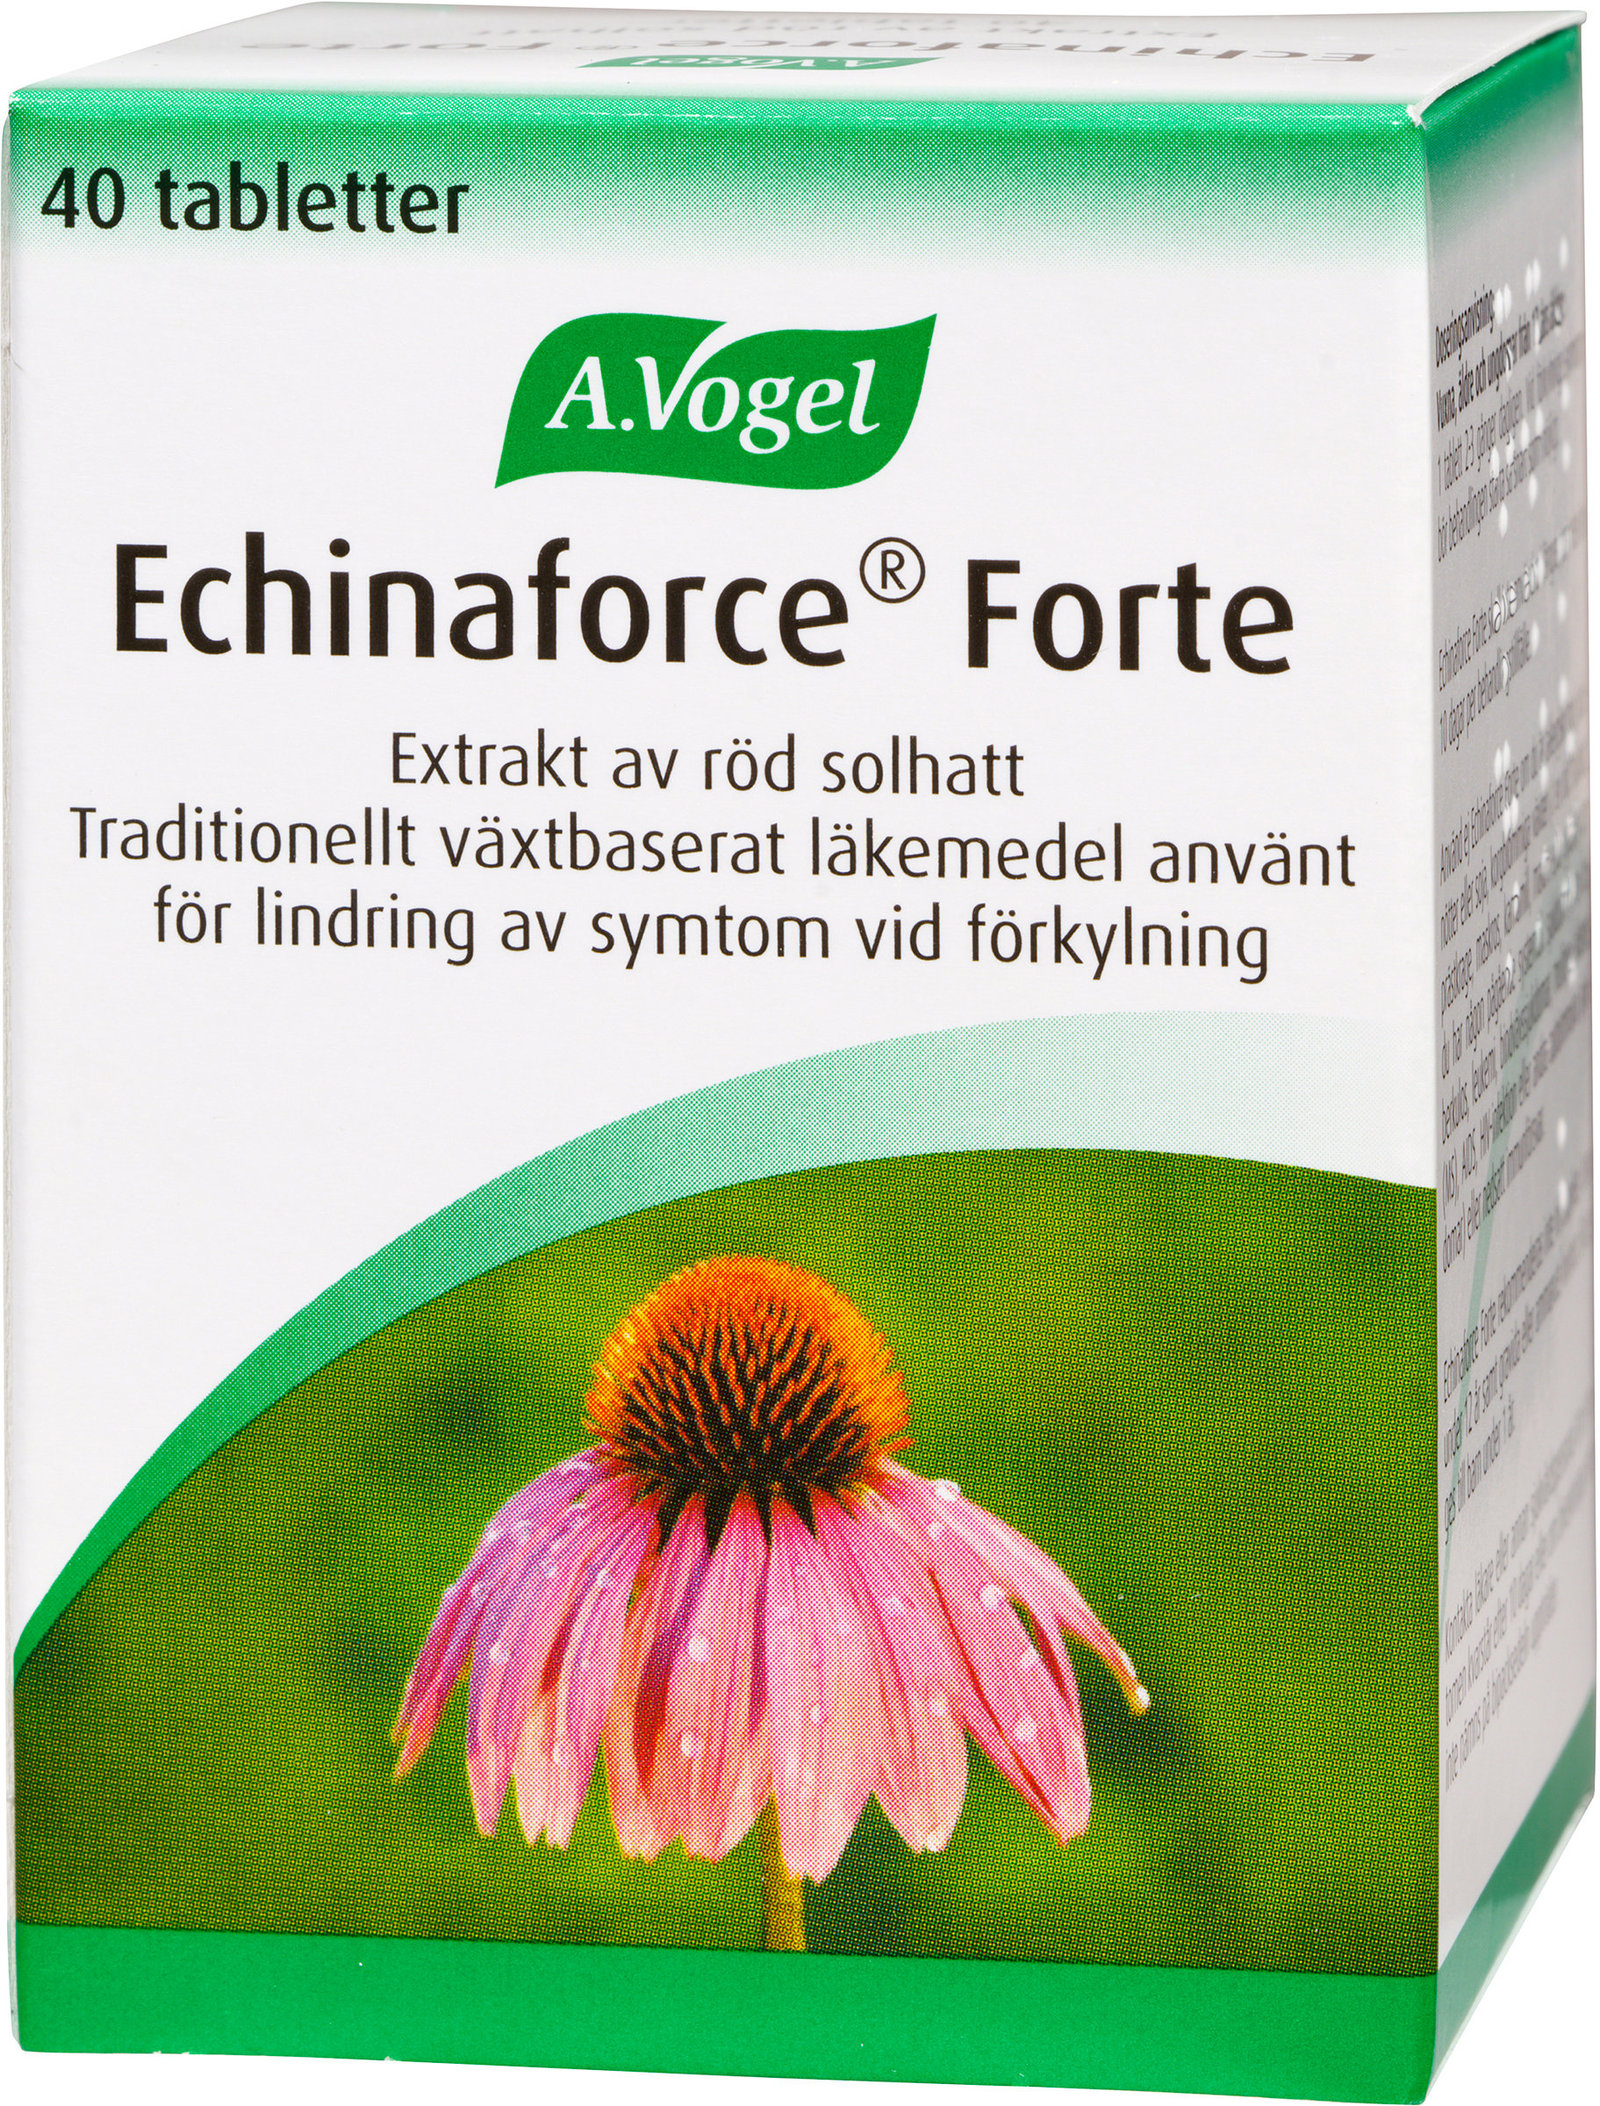 A.Vogel Echinaforce Forte 40 tabletter